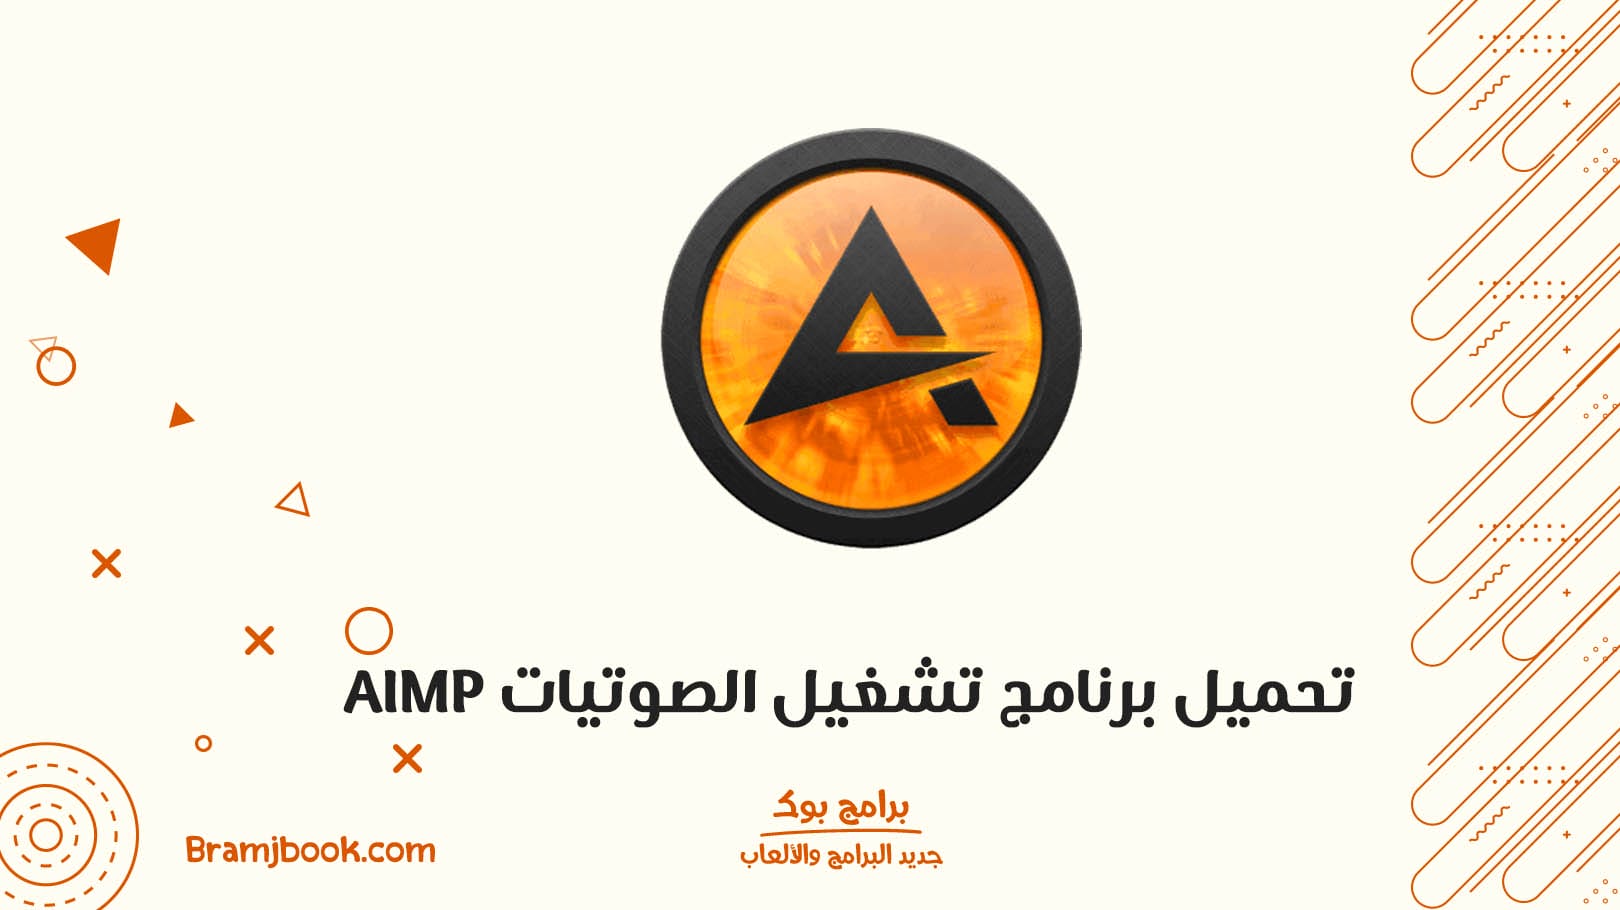 تحميل برنامج AIMP للكمبيوتر